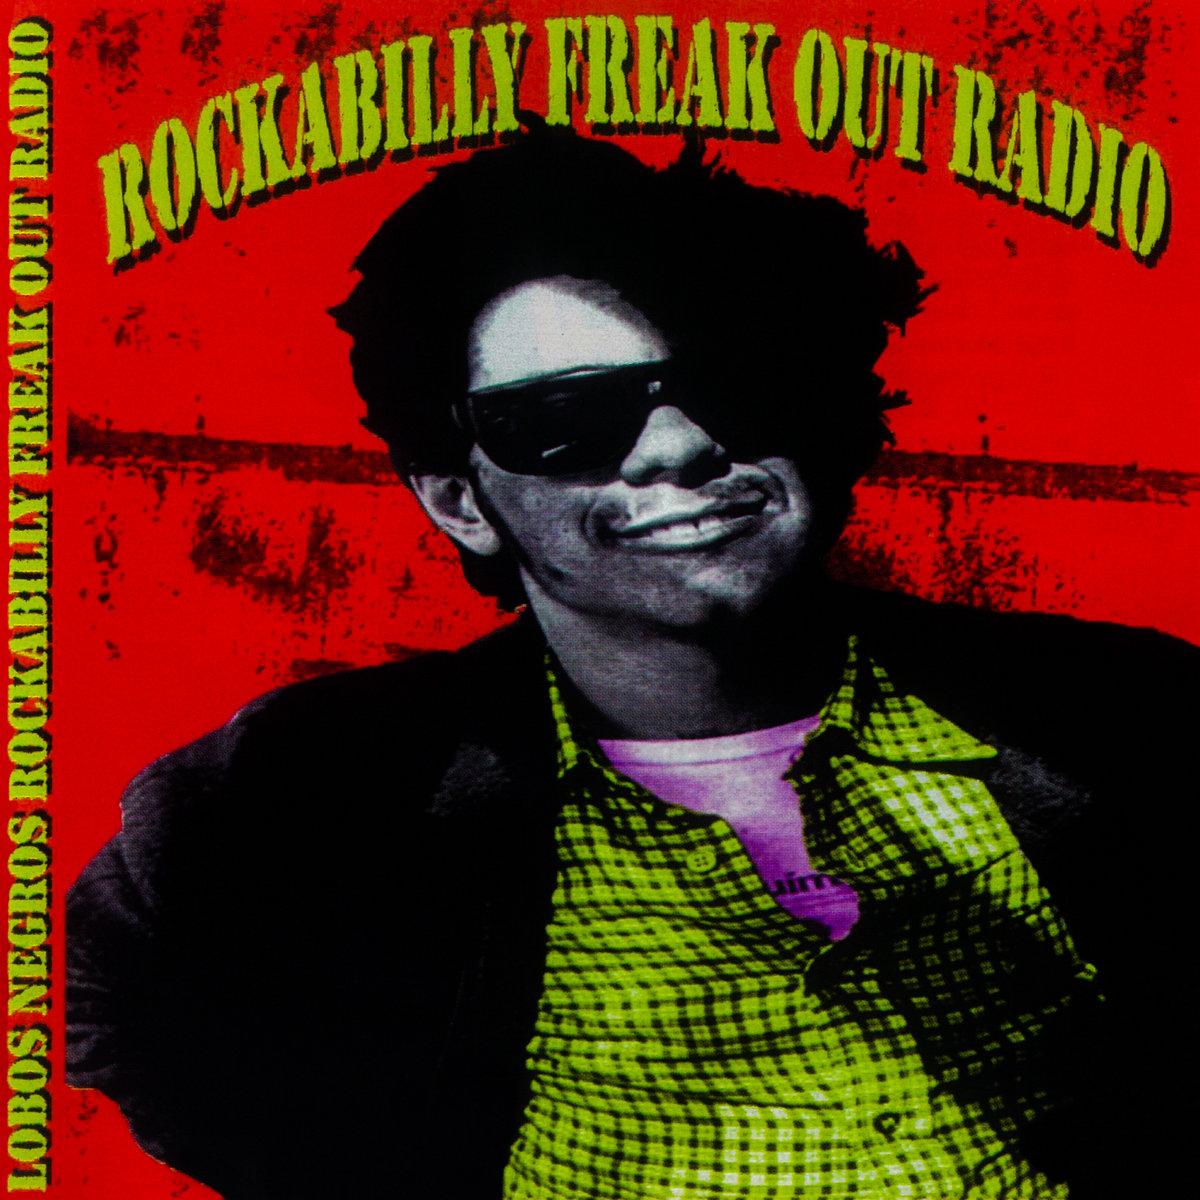 Rockabilly freak out radio | Lobos Negros